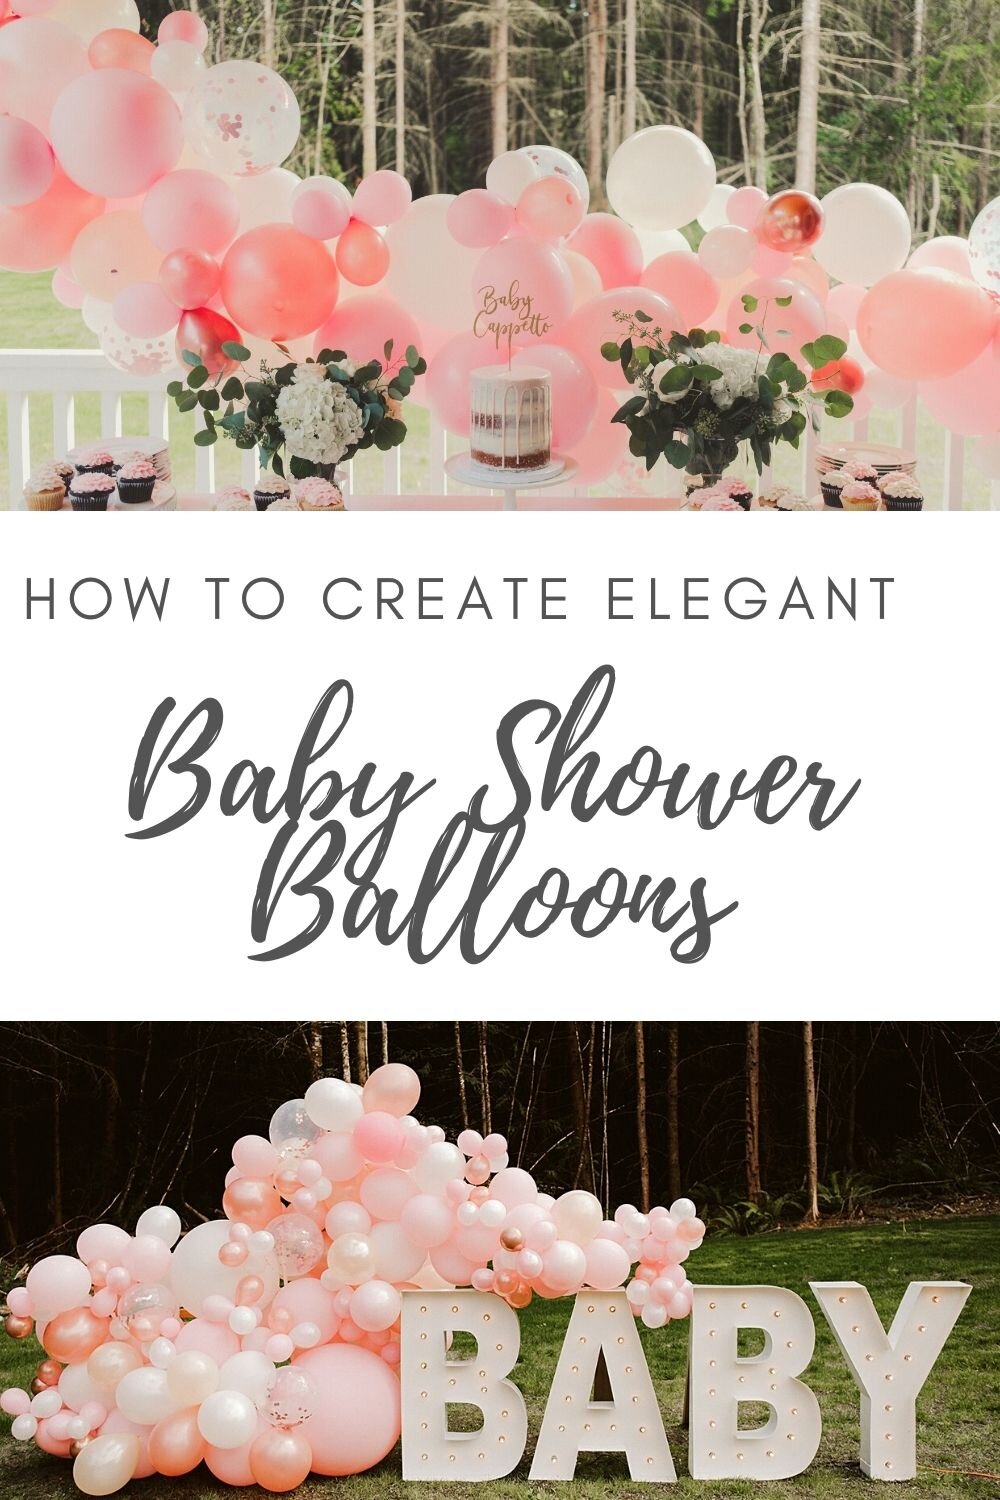 Baby shower balloons.jpg